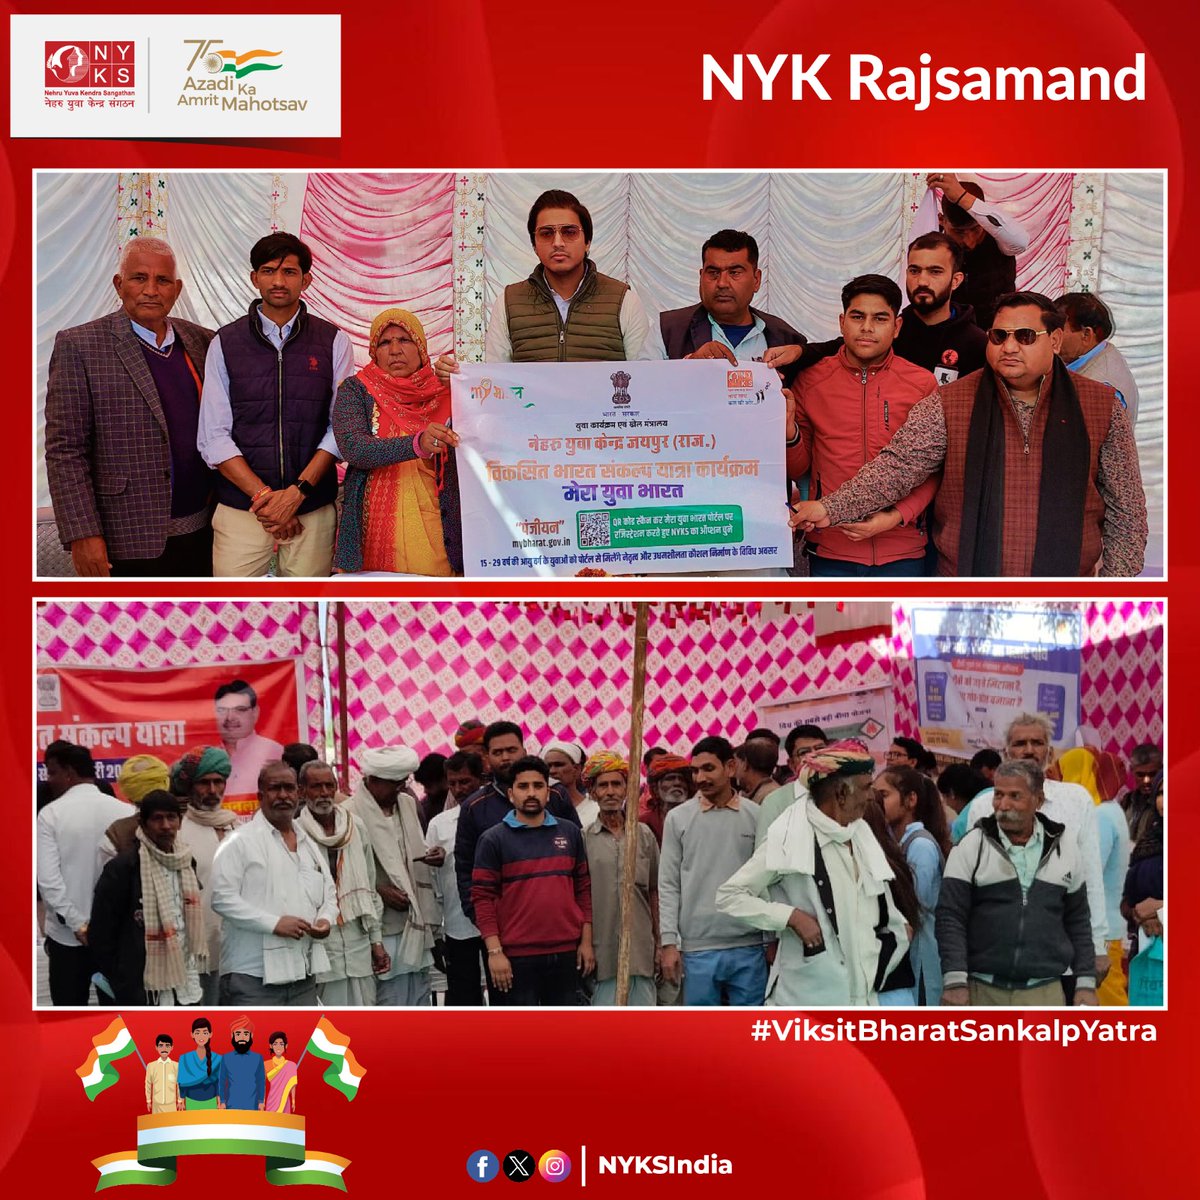 #ViksitBharatSankalpYatra कार्यक्रम के दौरान नेहरू युवा केंद्र राजसमंद के स्वयं सेवकों ने #MYBharat रजिस्ट्रेशन डेस्क लगाकर युवाओं का पंजीकरण किया एवं उन्हें युवाओं के कौशल निर्माण हेतु समर्पित इस पोर्टल के बारे में जानकारी भी दी। #MeraYuvaBharat #NYKS #Rajasthan